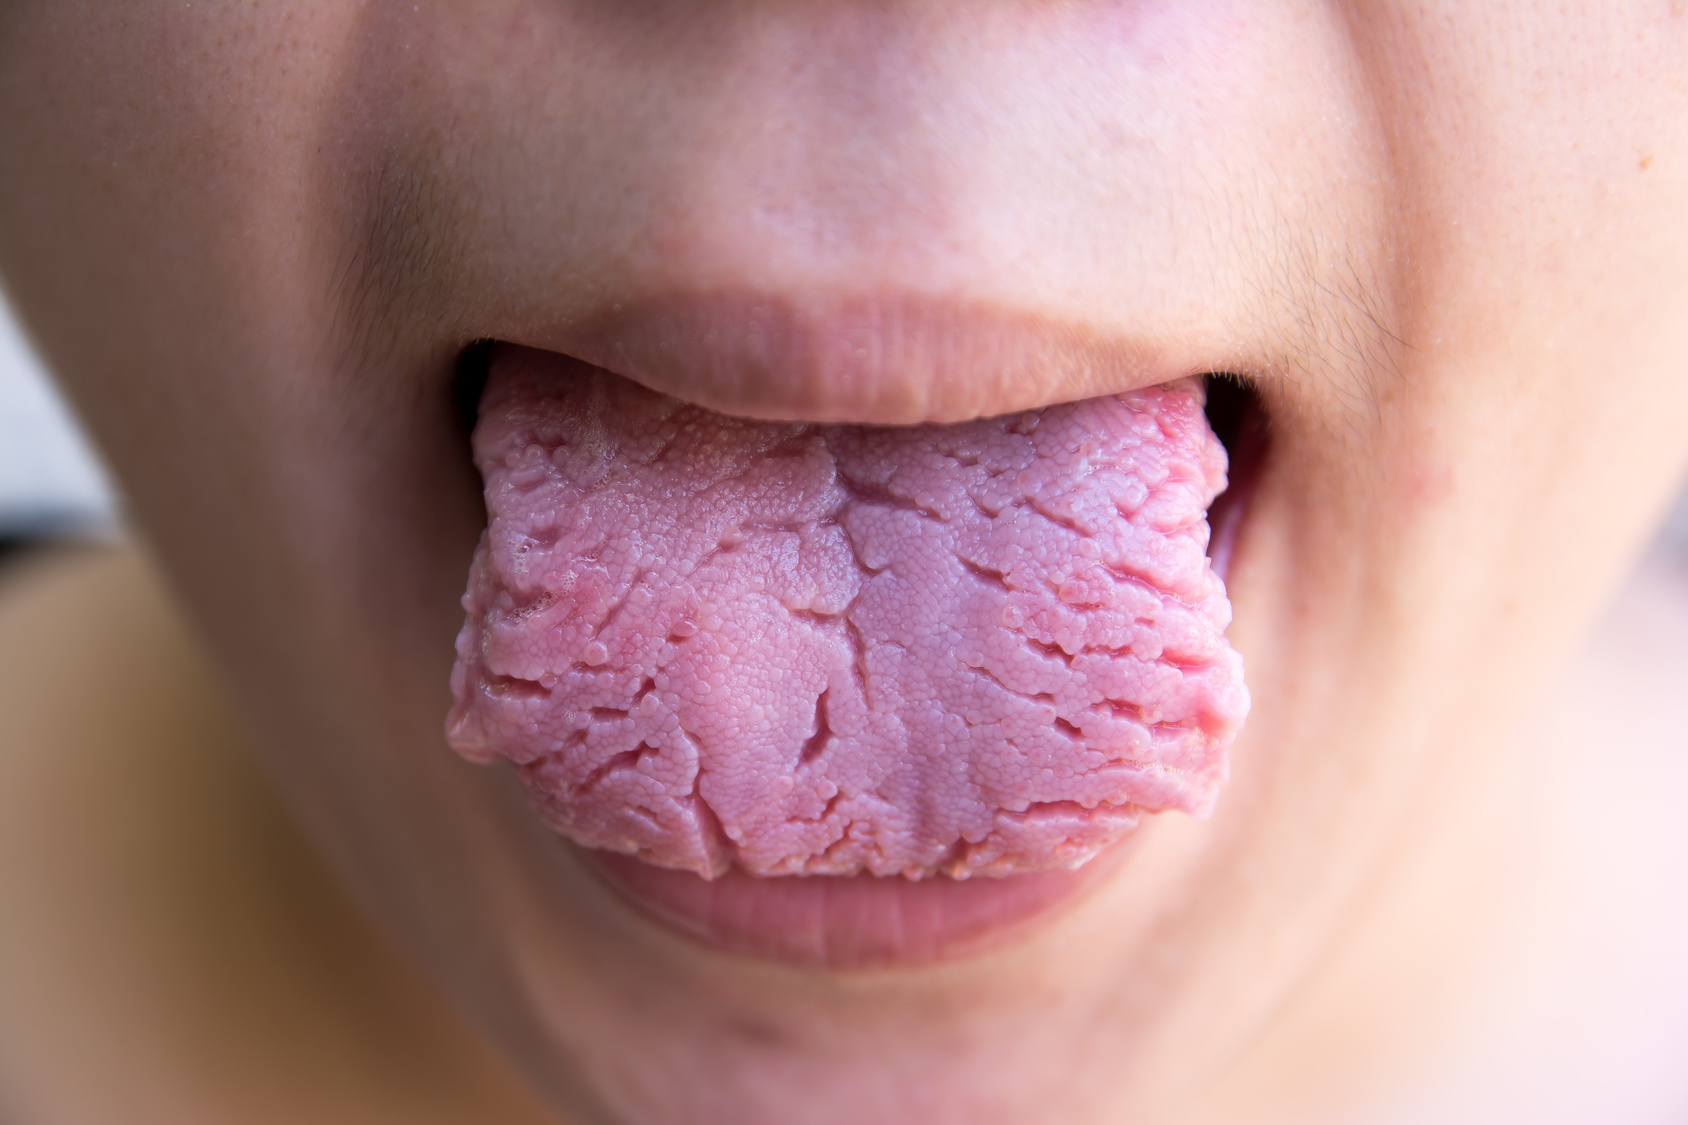 4. Tongue cracks 